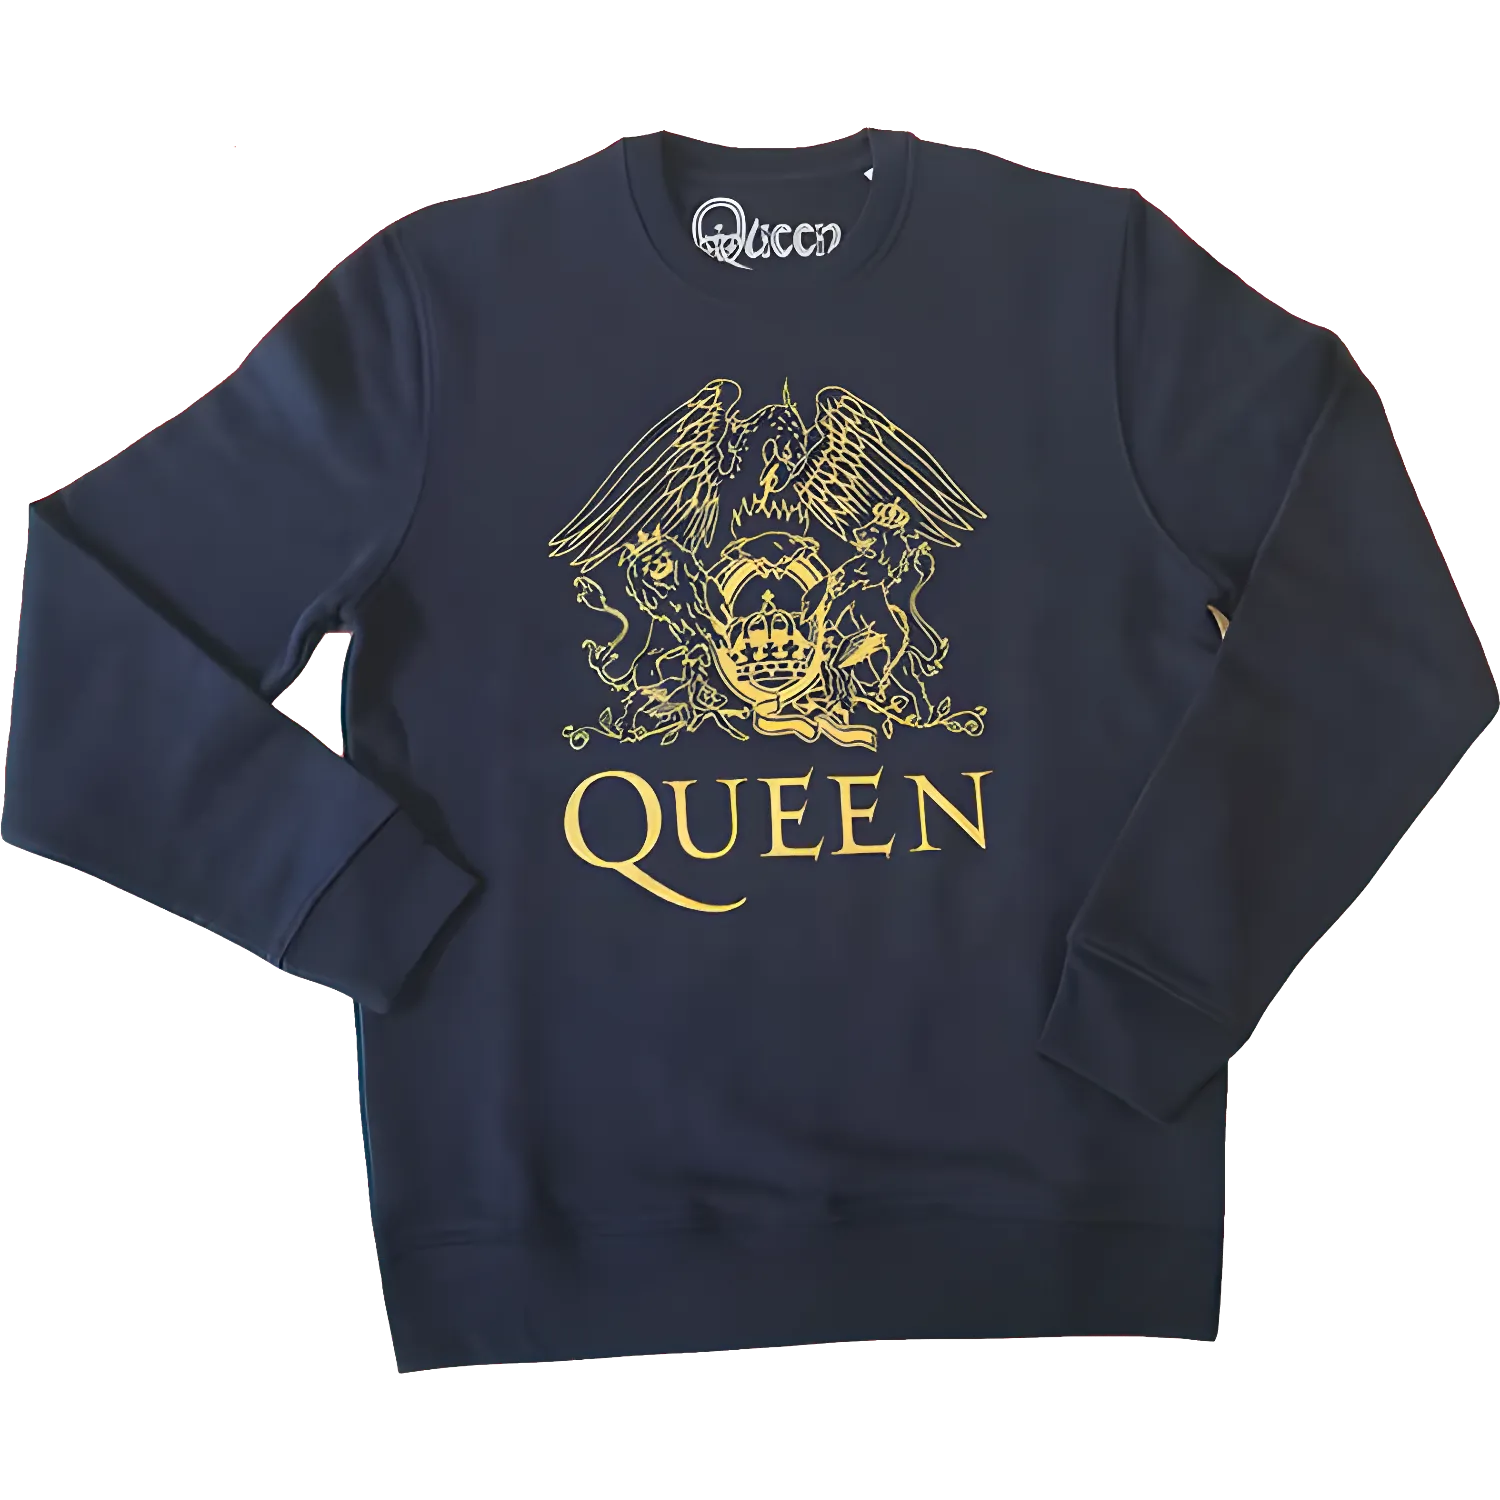 Free Queen Sweatshirt For Winners